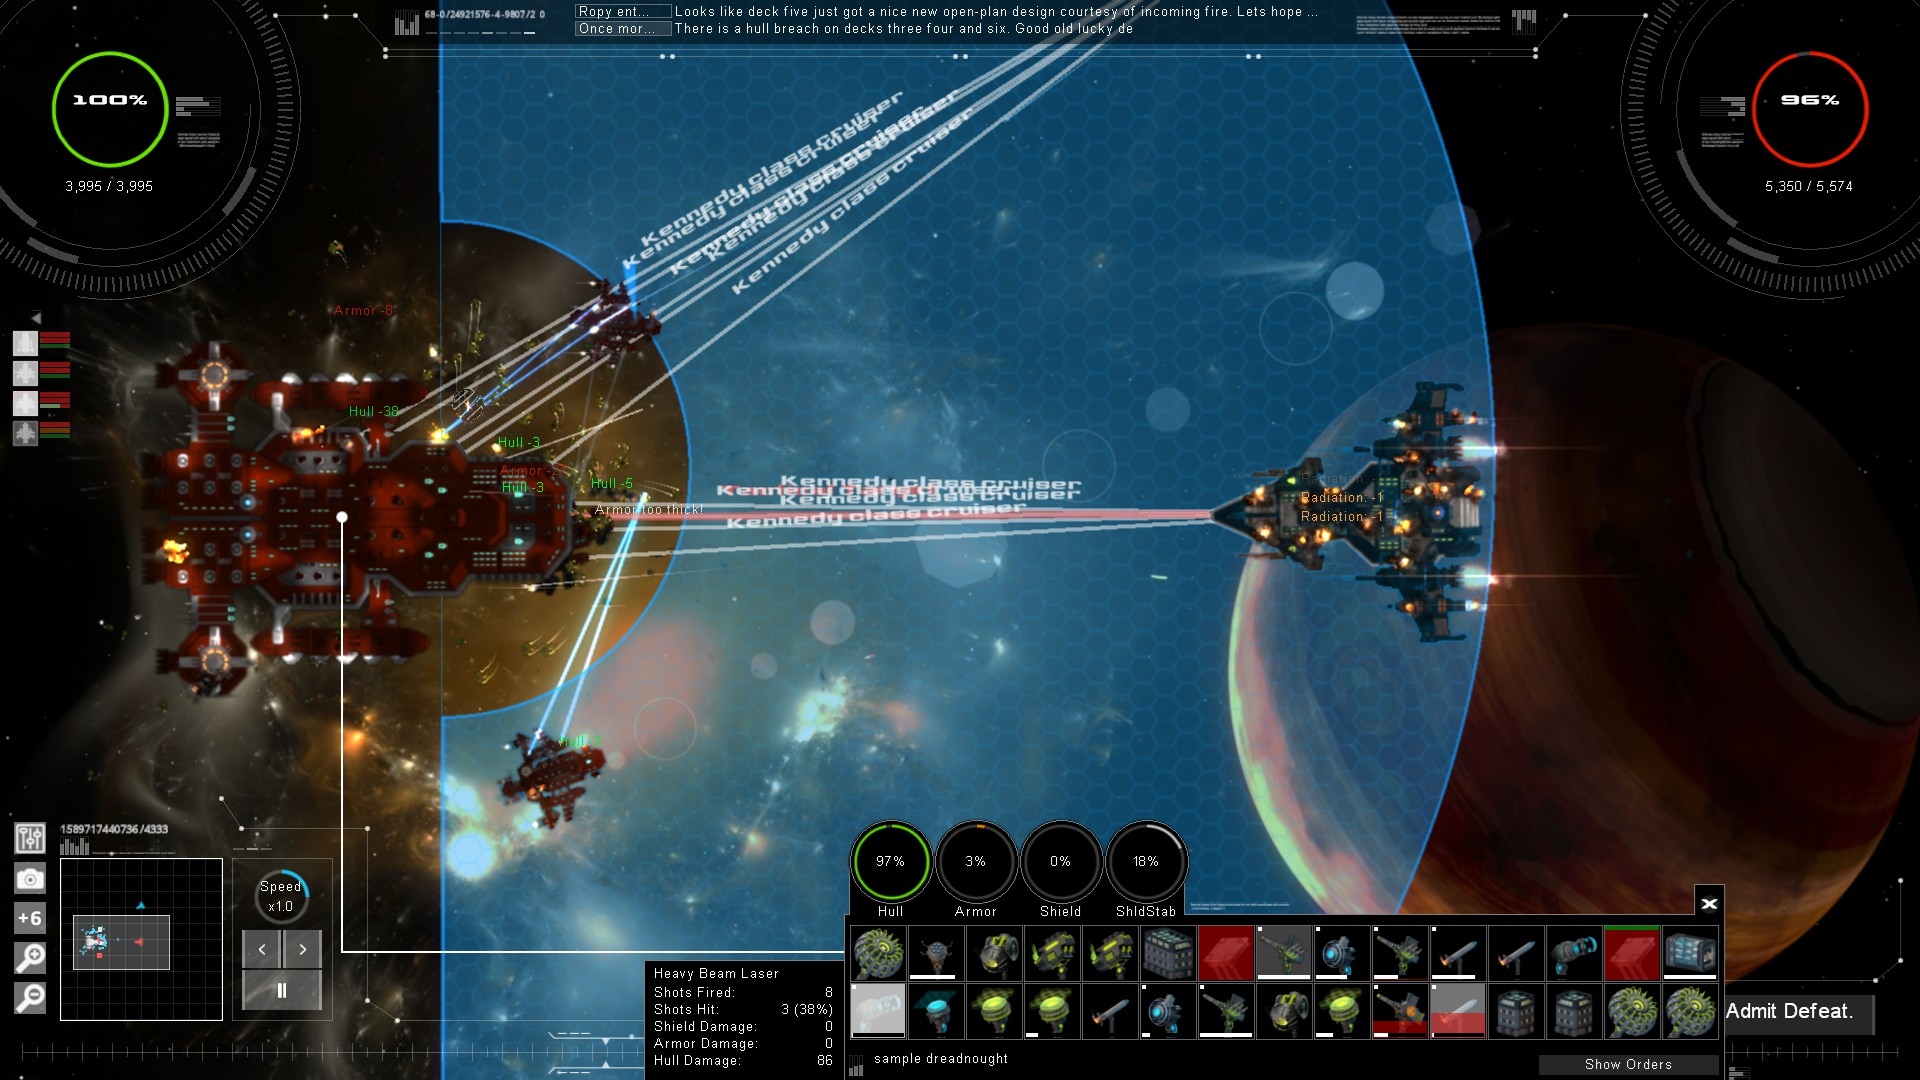 Gratuitous Space Battles II Sledovanie ukazovateov u priamo v boji a ako zaber zvolen taktika.